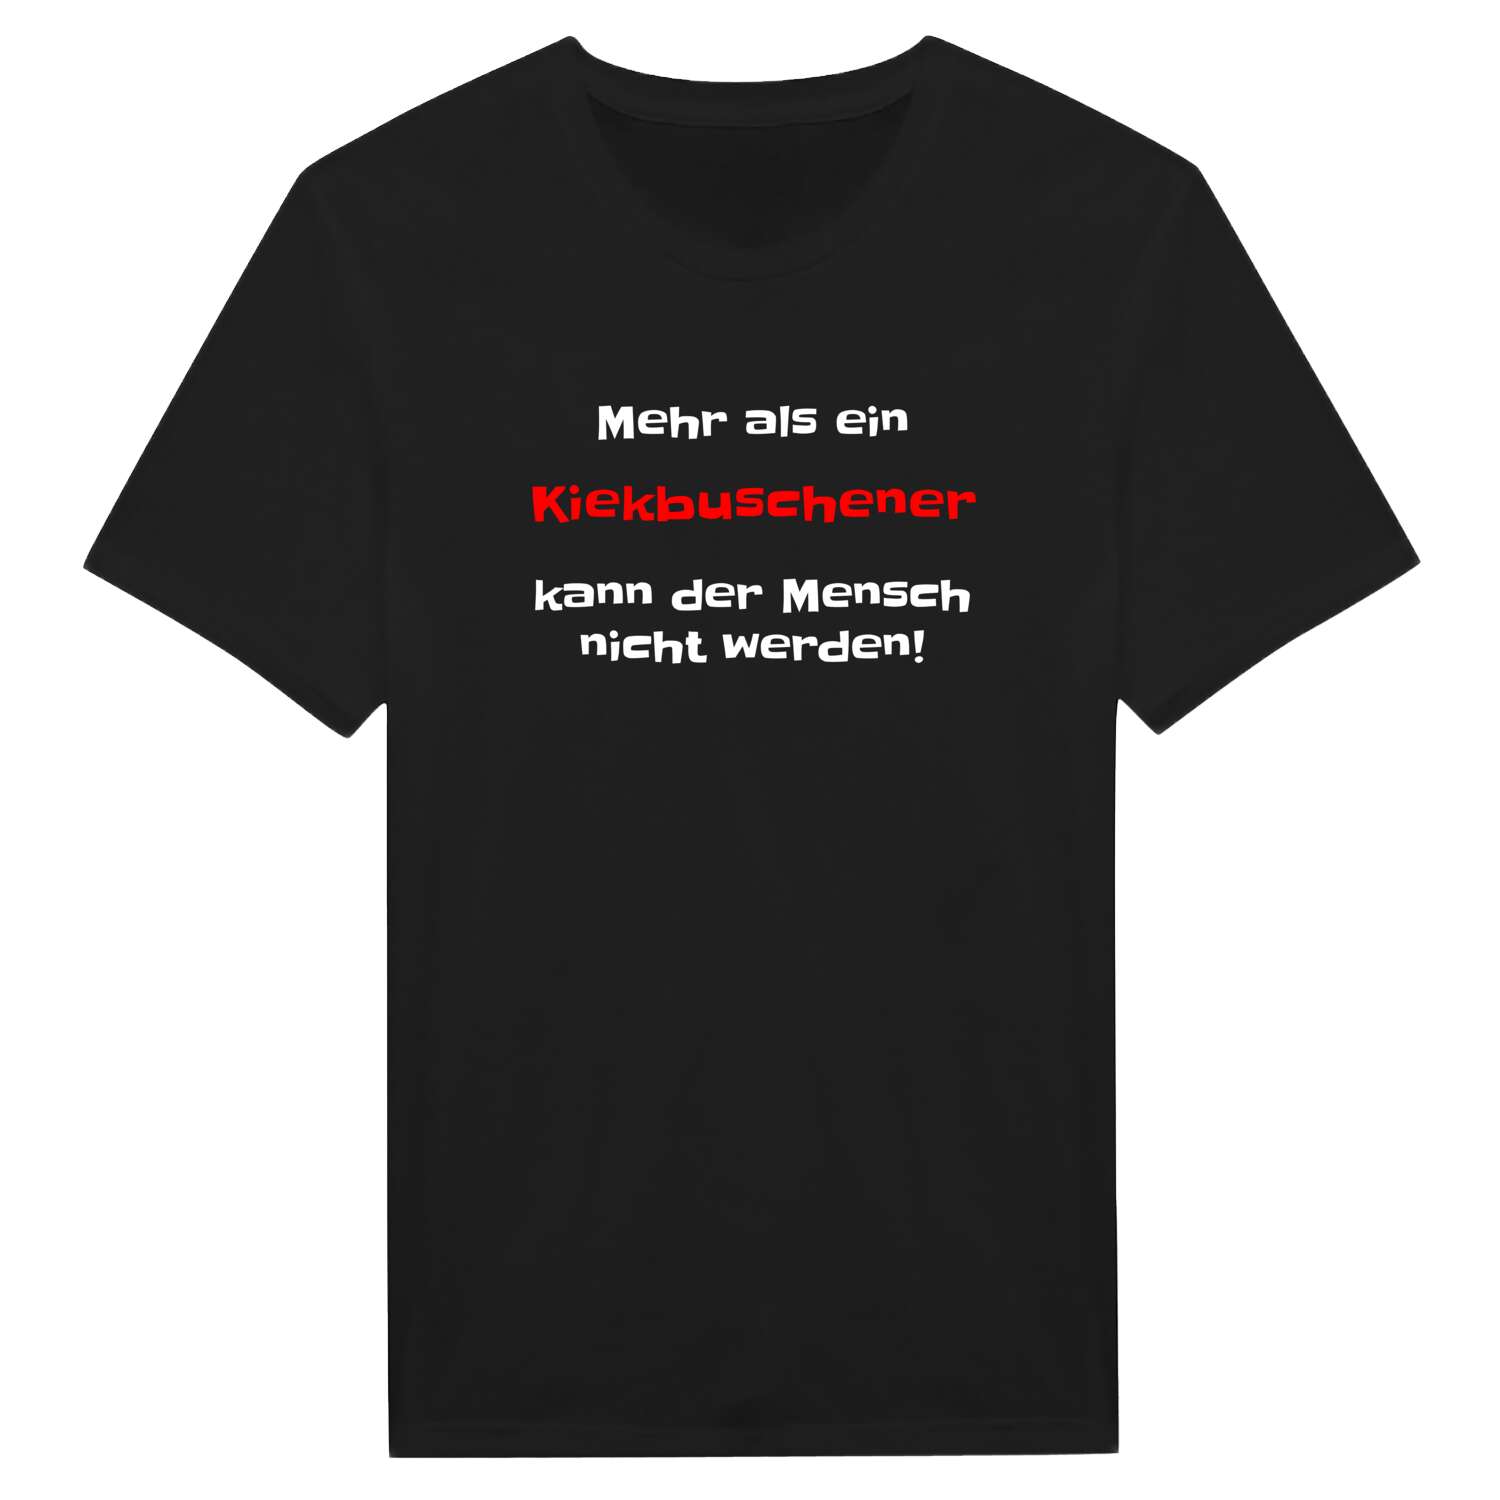 Kiekbusch T-Shirt »Mehr als ein«